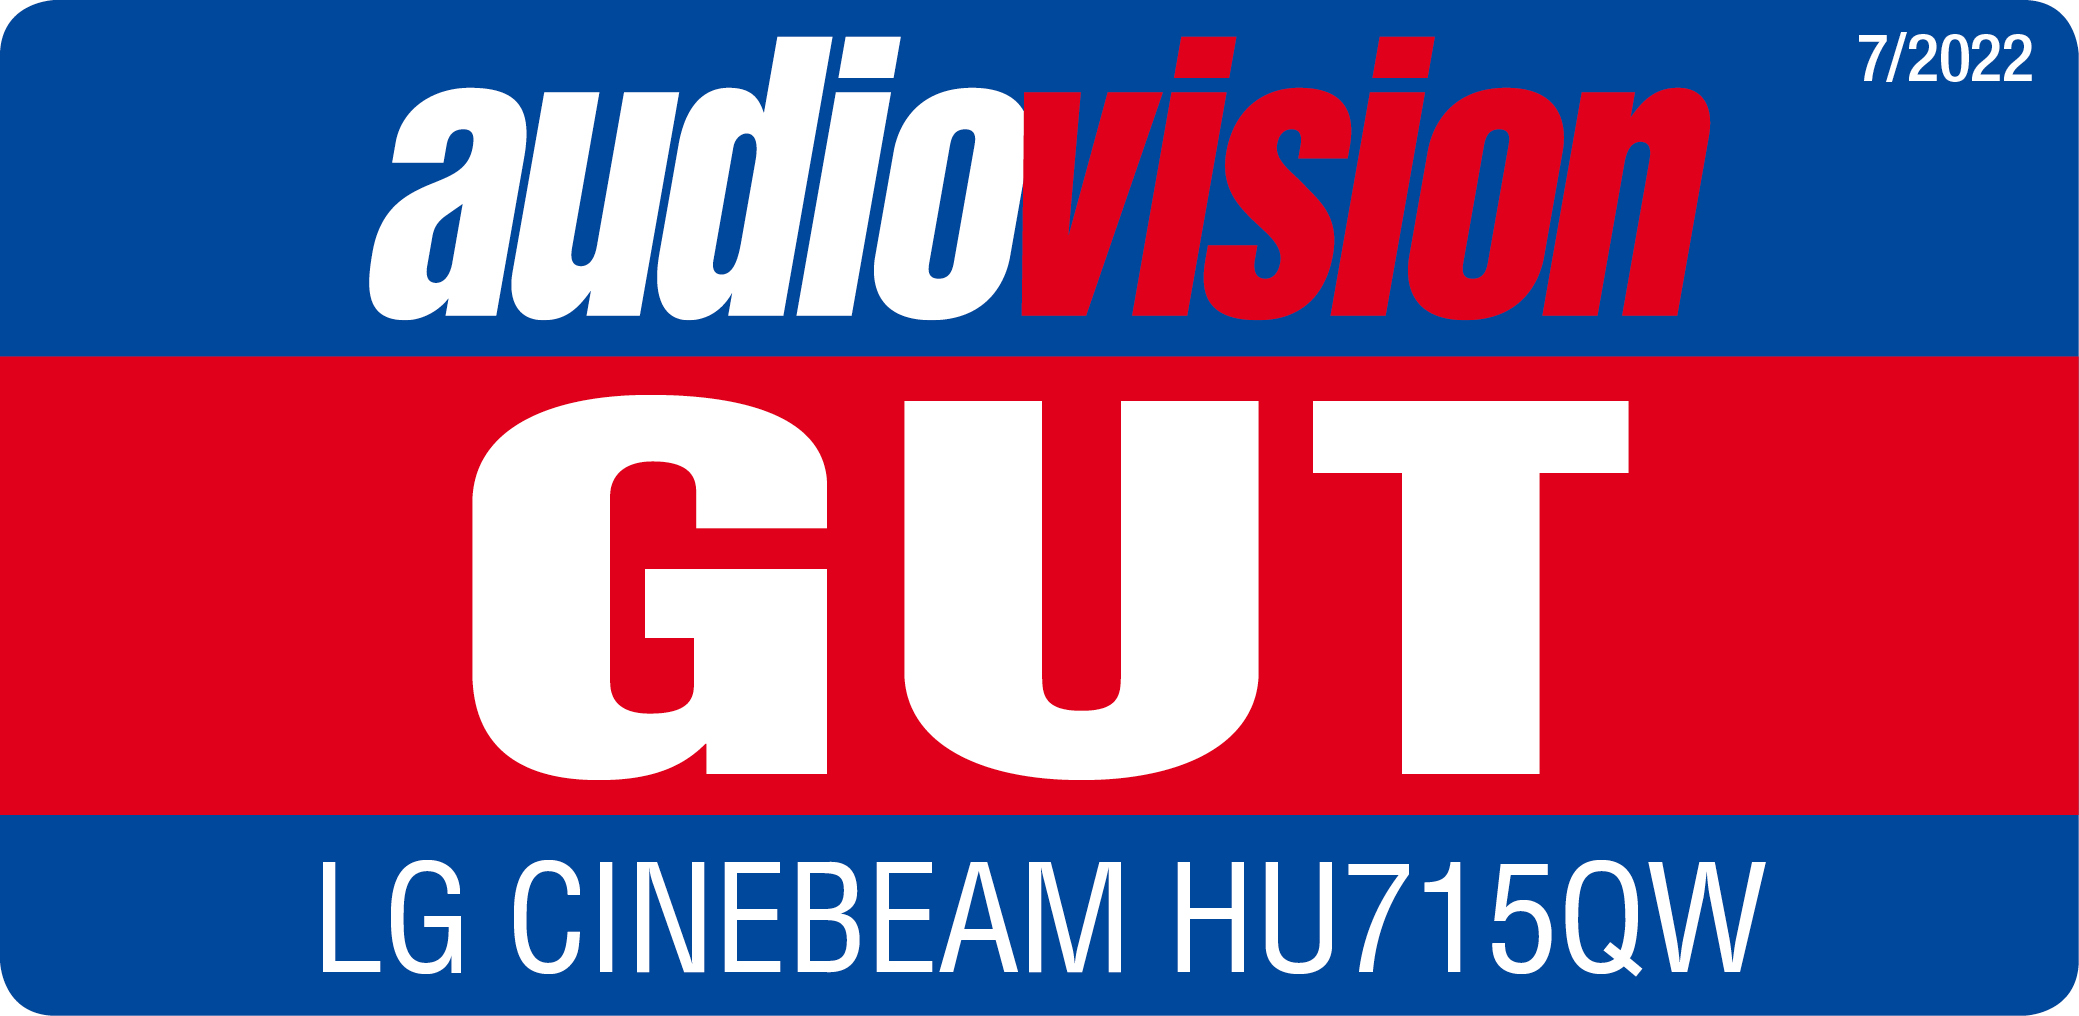 Der LG CineBeam HU715QW hat im Test bei Audiovision das Testurteil "gut" erhalten.1